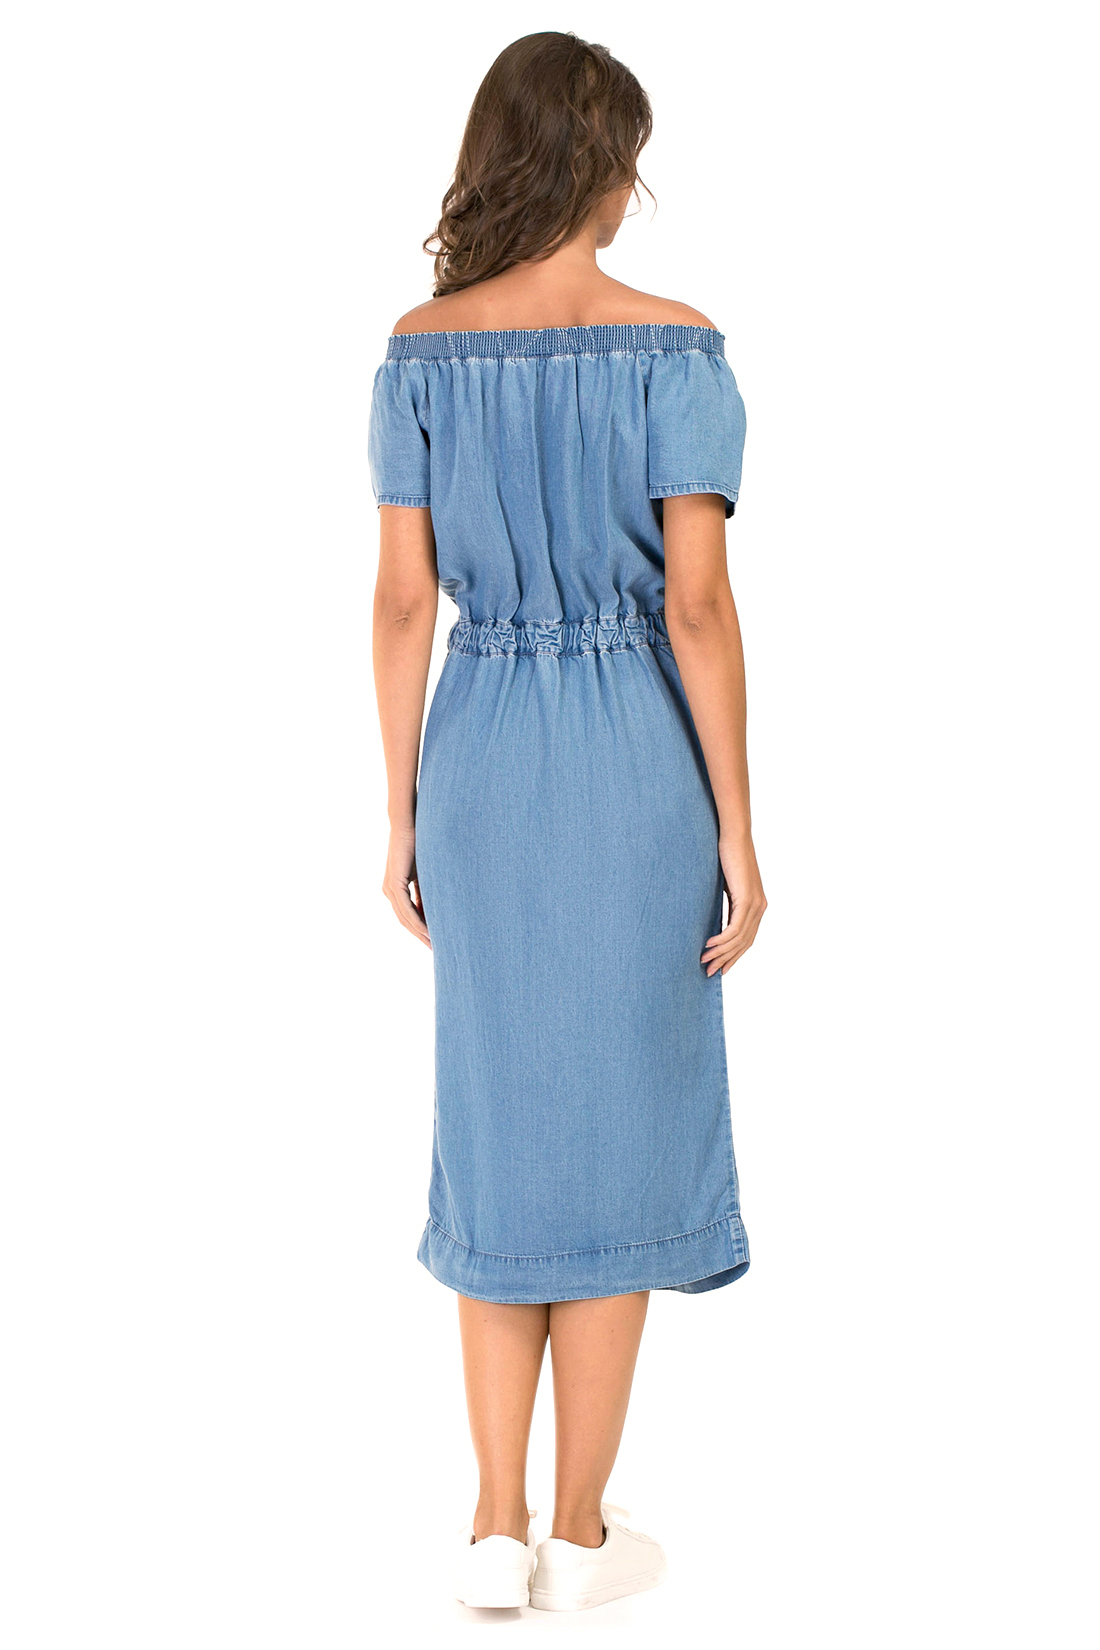 Платье с открытыми плечами из денима (арт. baon B457076), размер M, цвет light blue denim#голубой Платье с открытыми плечами из денима (арт. baon B457076) - фото 2